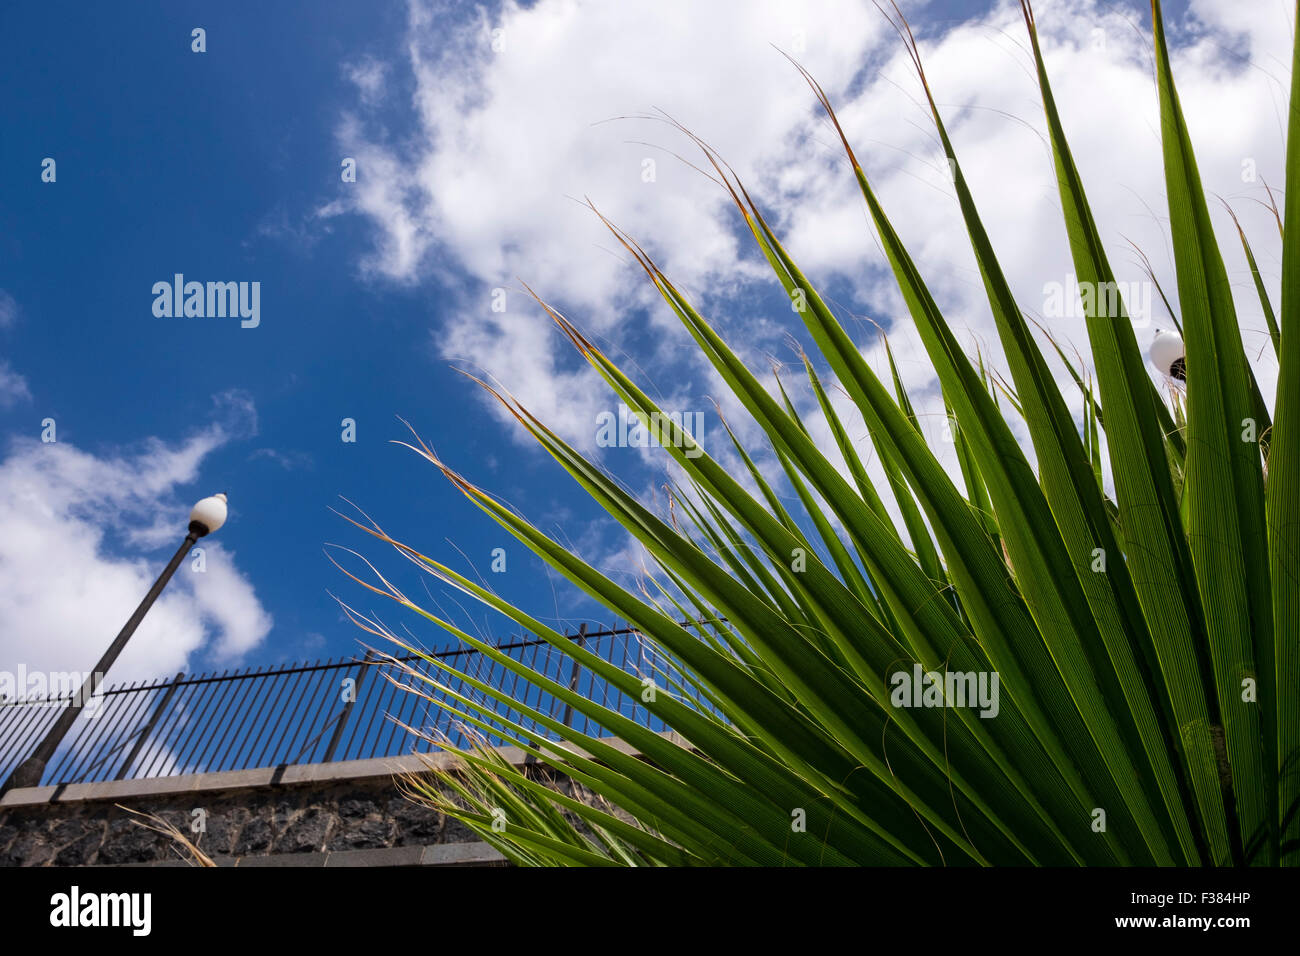 Motifs abstraits d'une feuille d'un palmier contre un mur de pierre, rambarde et ciel nuageux dans le parque maritimo Cesar Manrique, Santa Cruz, Banque D'Images